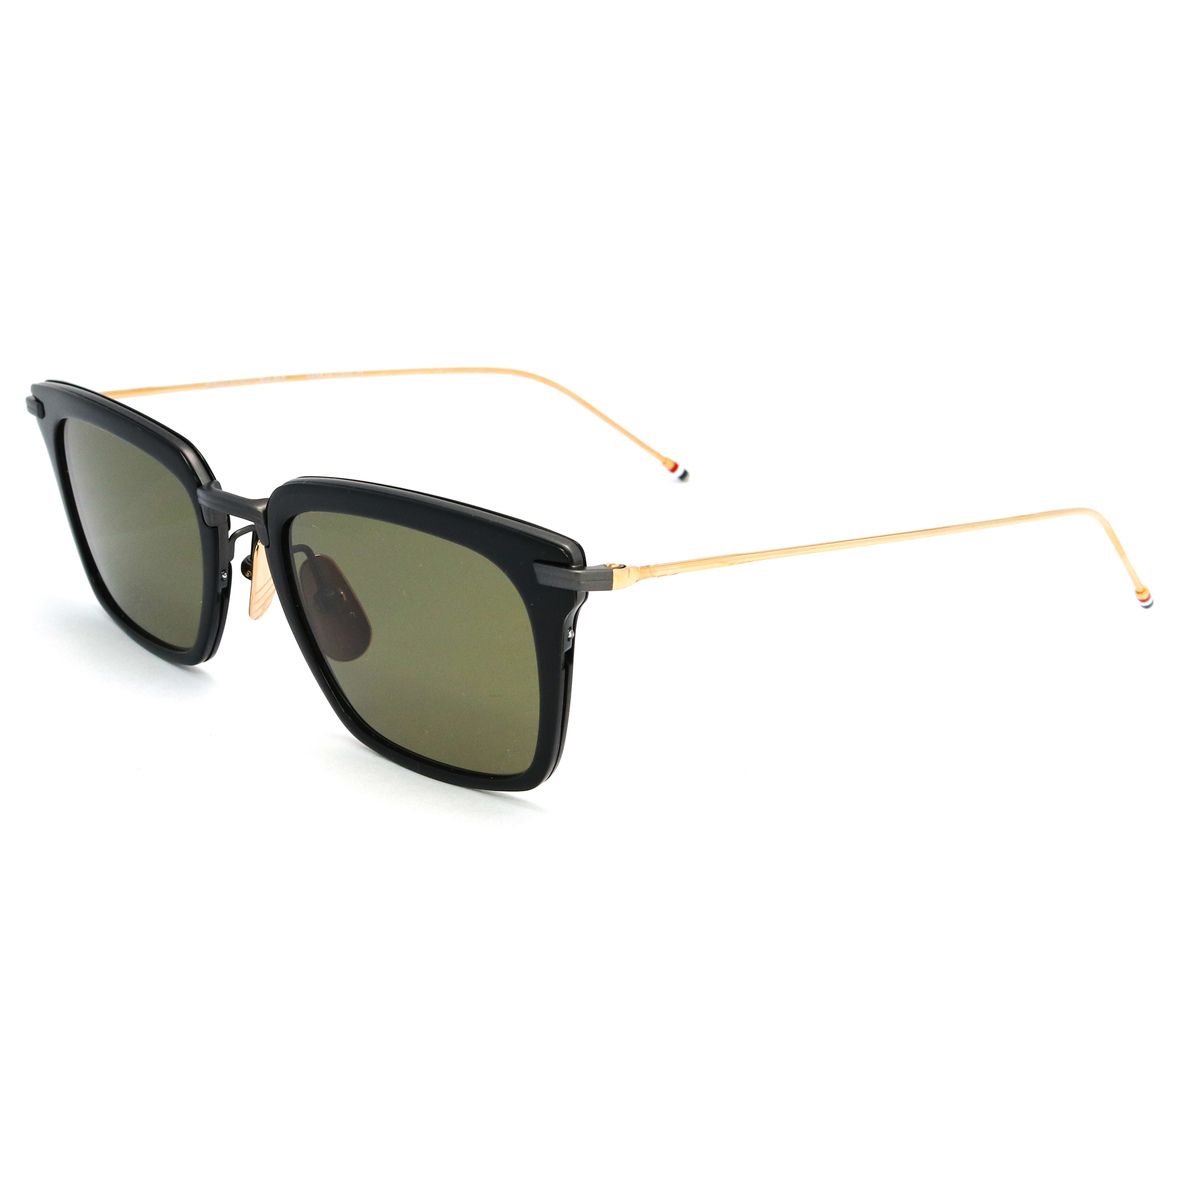 916 Square Sunglasses 1 - size 51